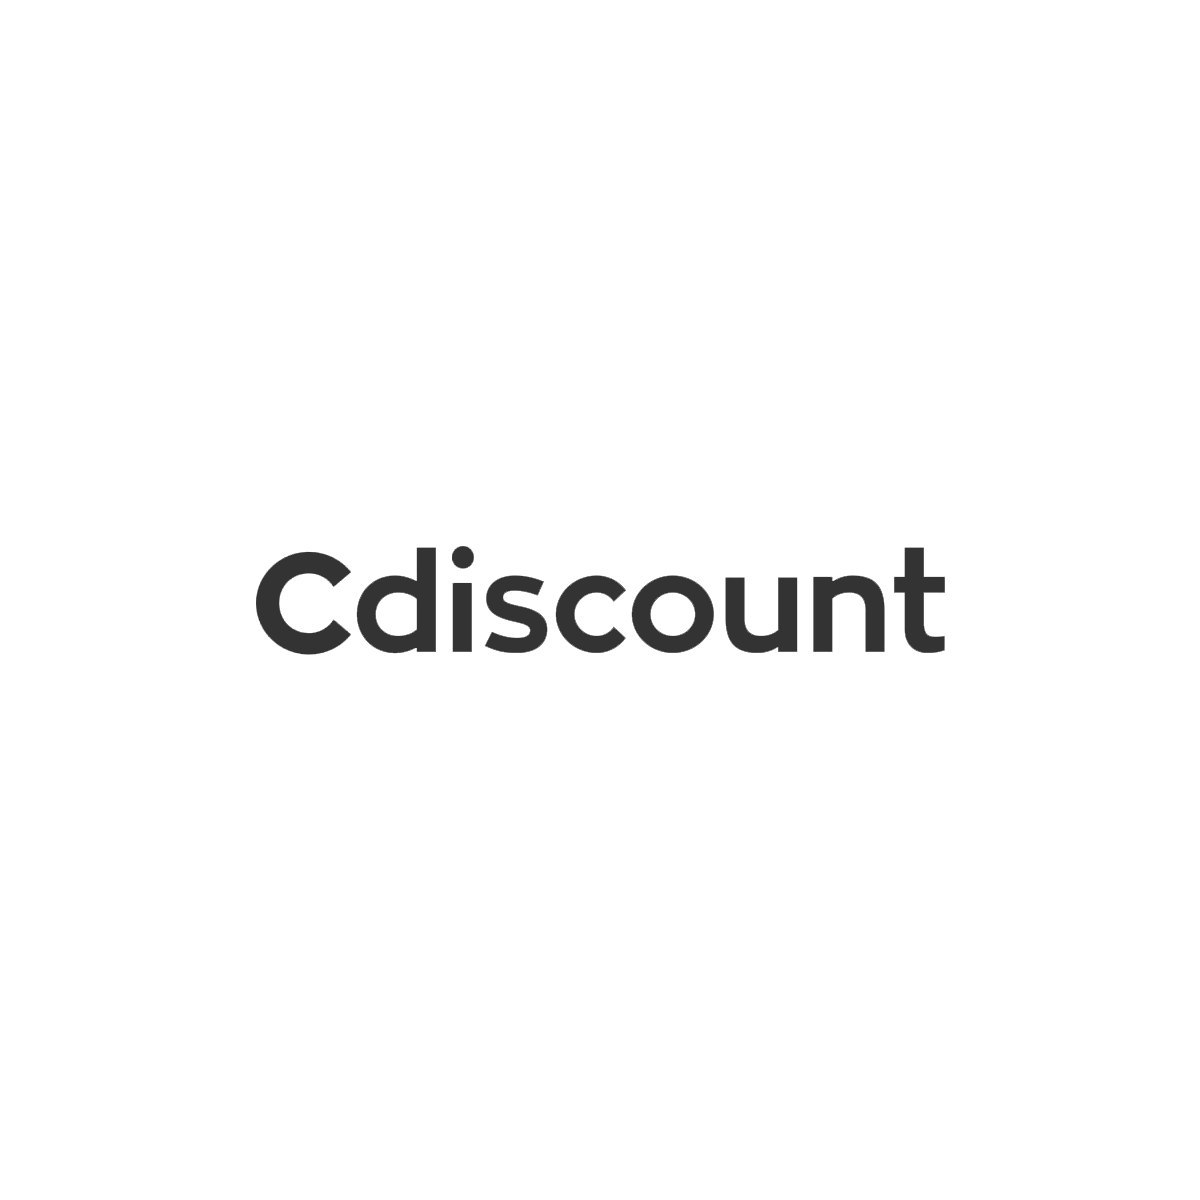 CDiscount